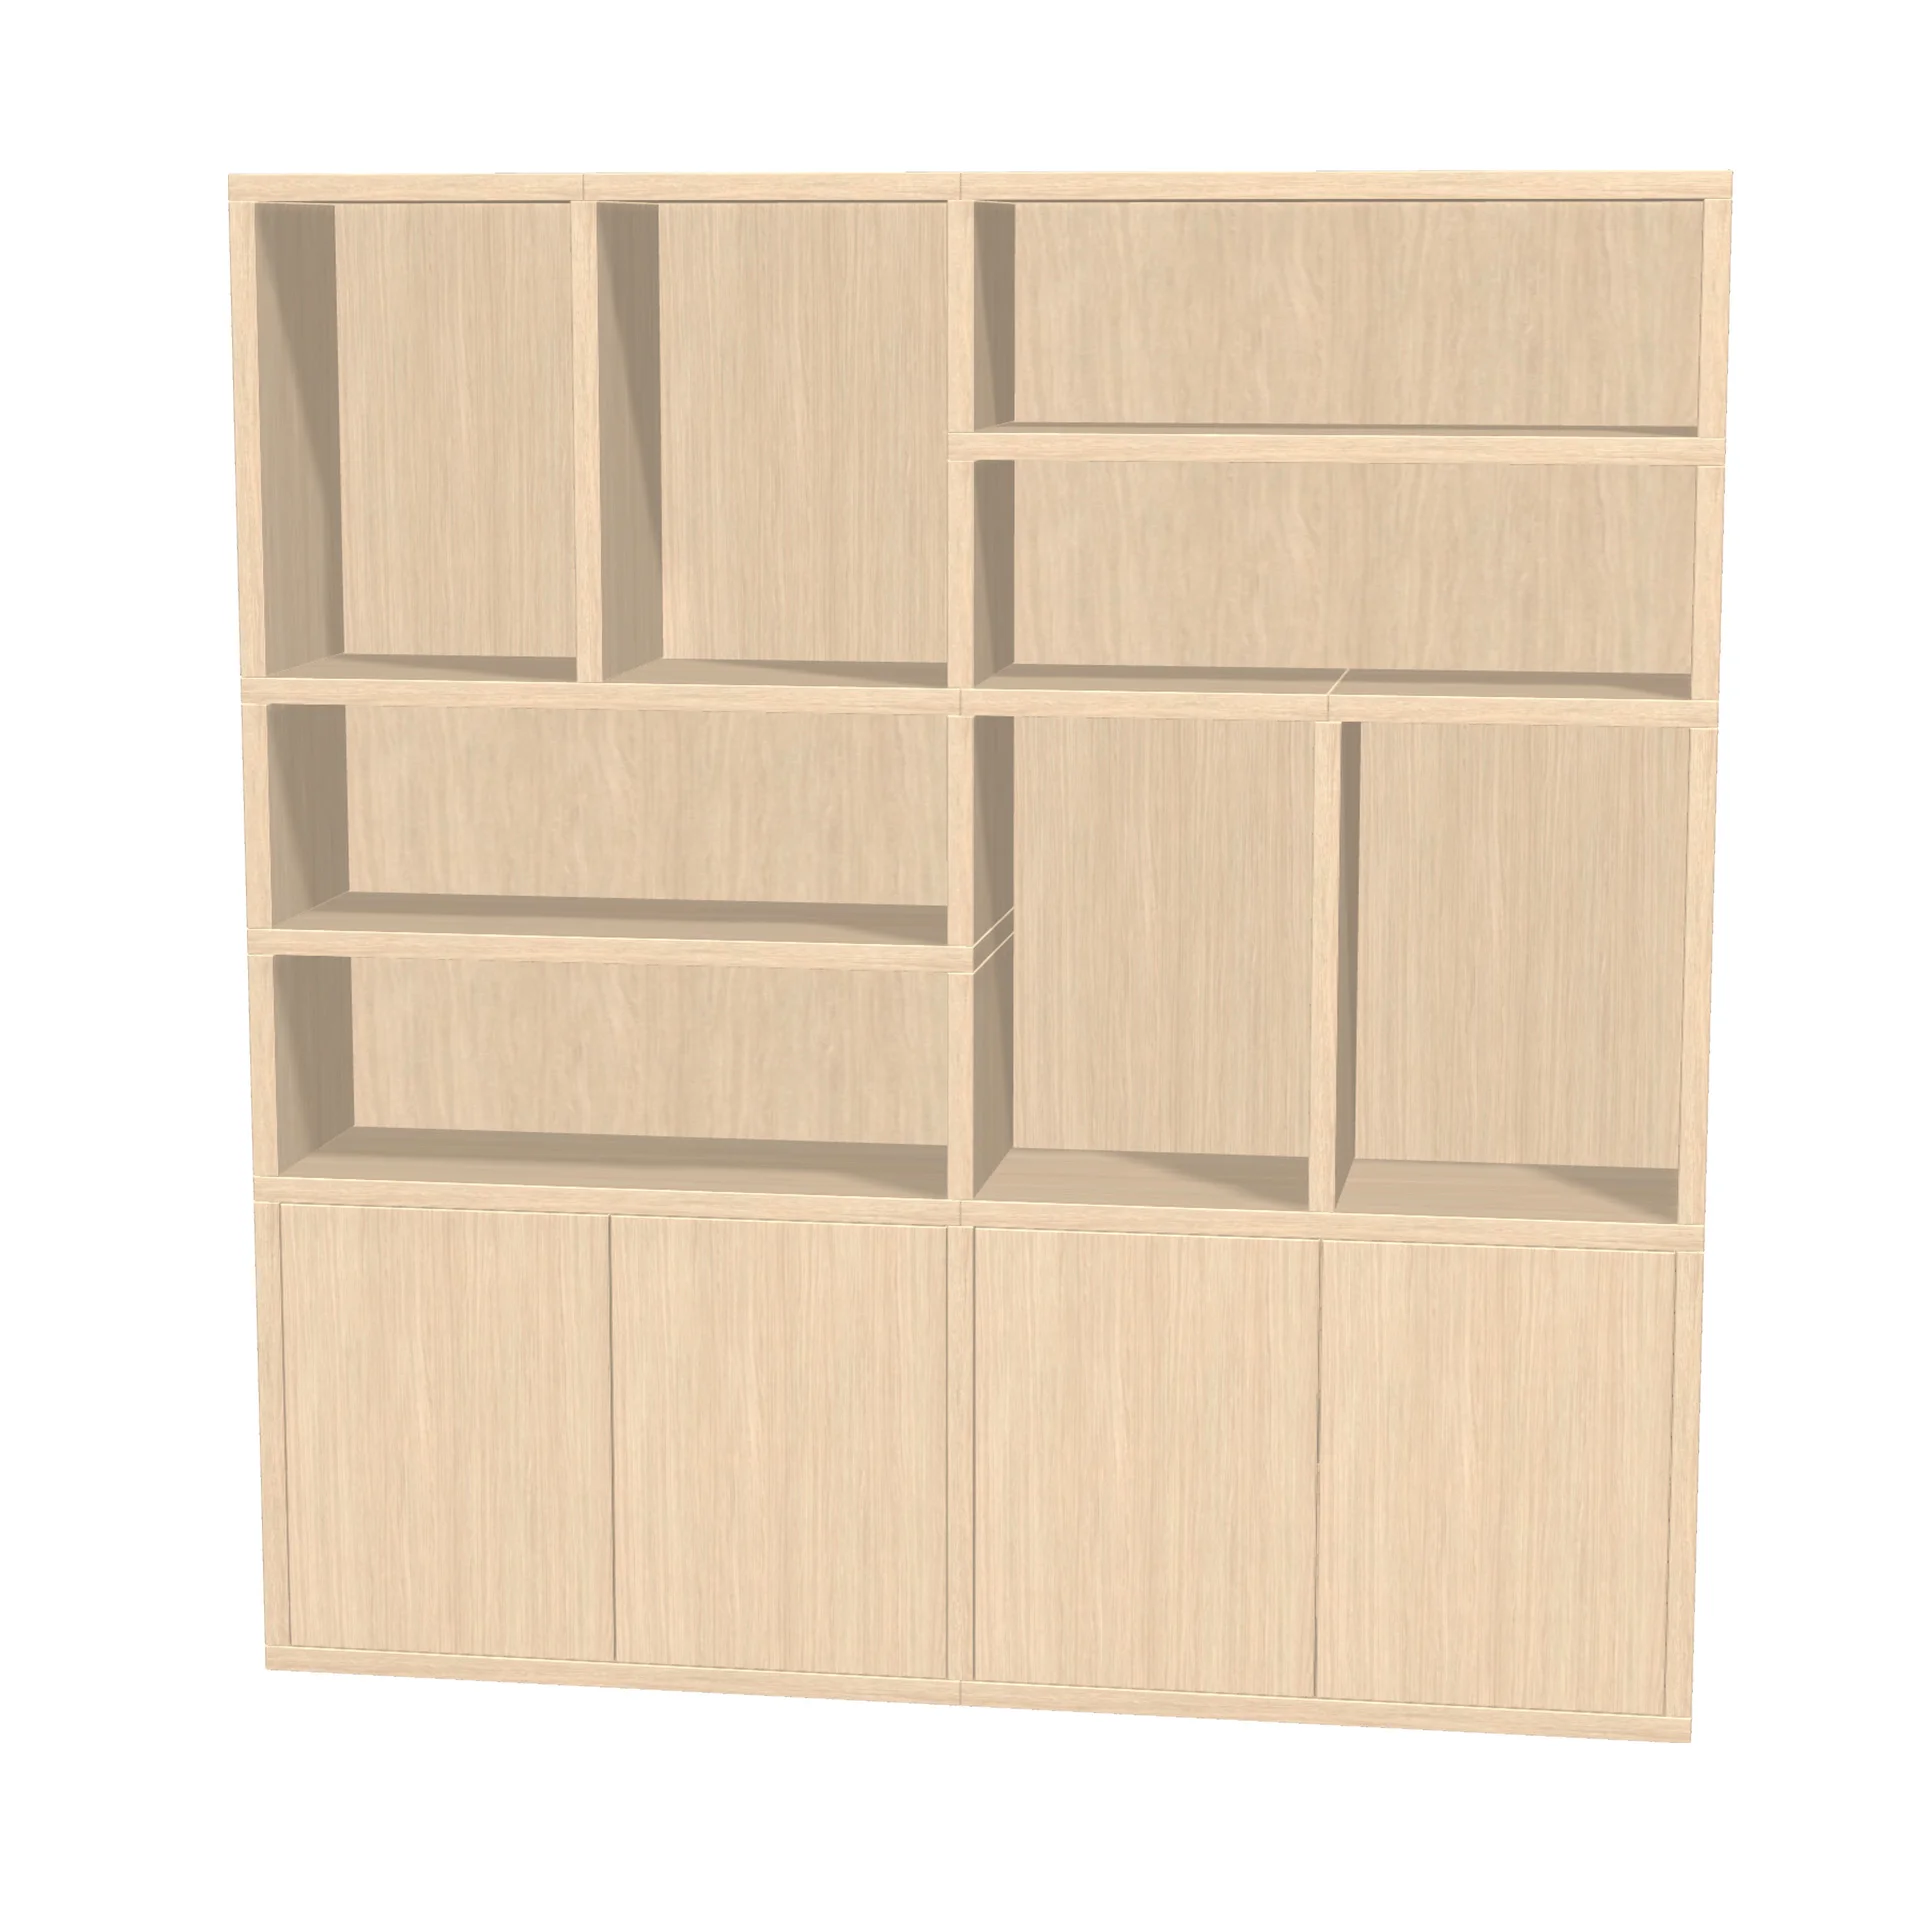 TSFC028 in natural oak furniture board